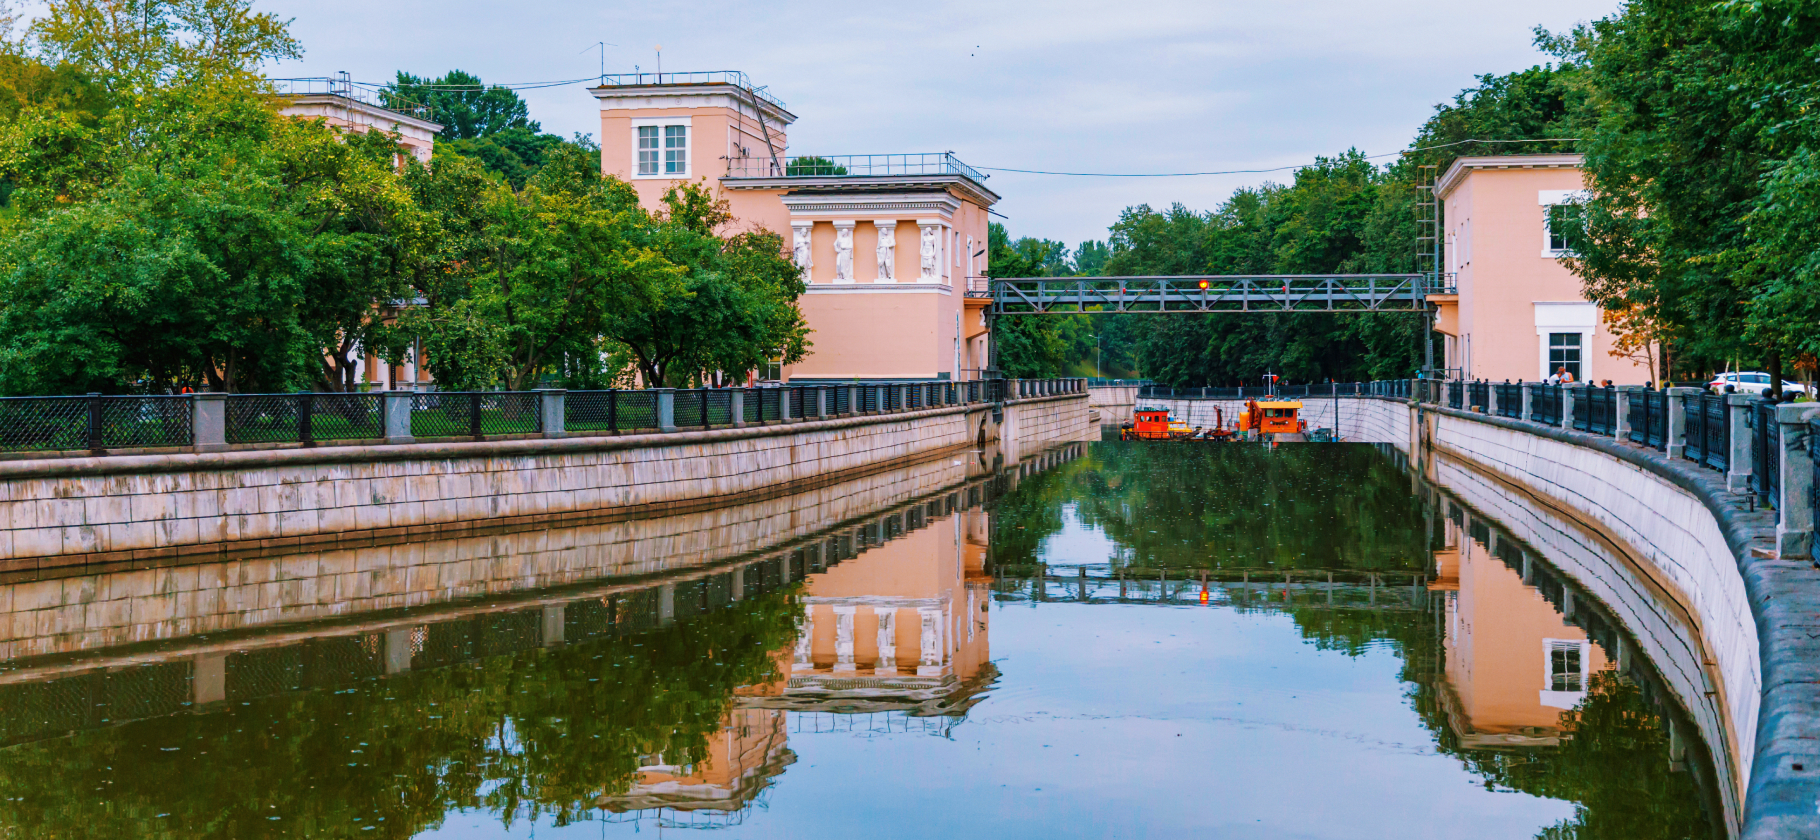 «Нет людей, и успокаивающе шумит водичка»: укромные места для прогулок в Москве